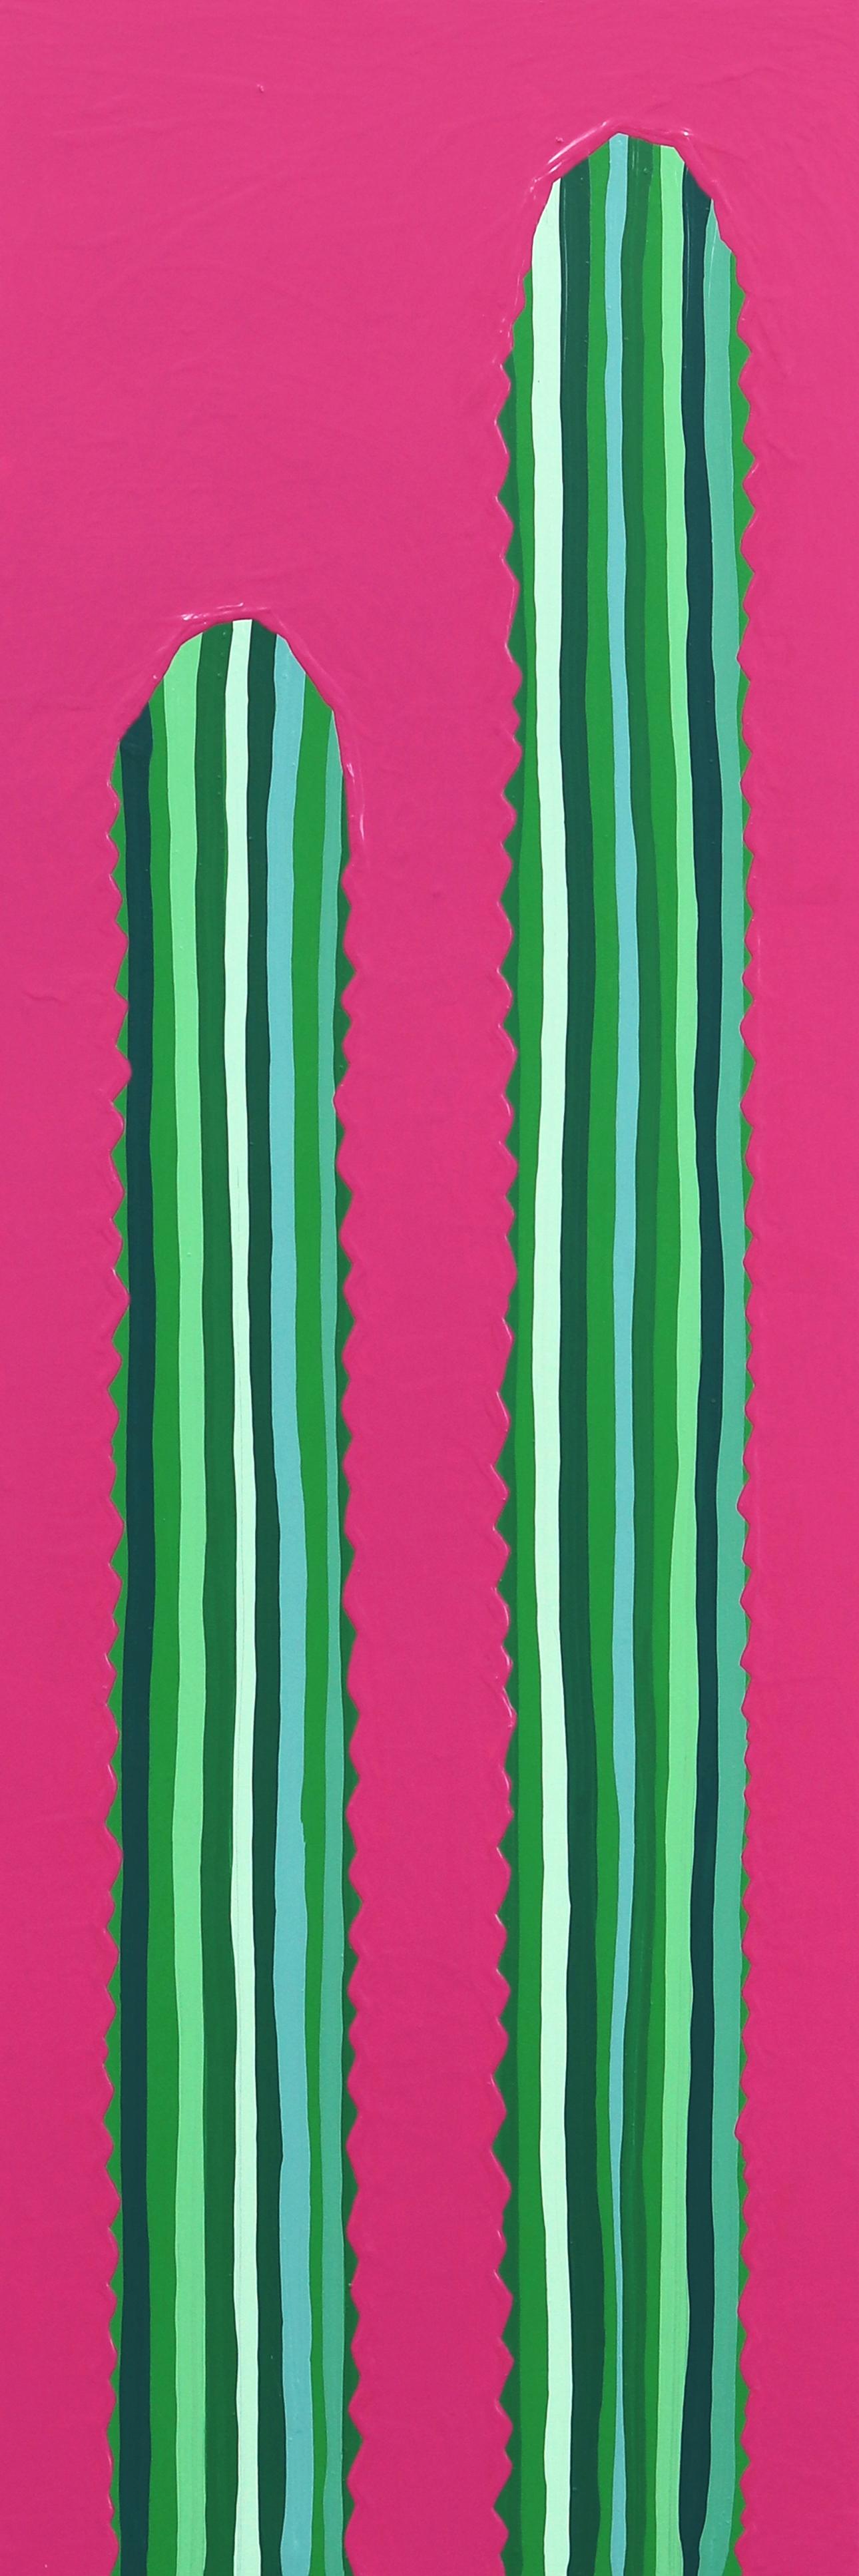 Figurative Painting Will Beger - Rosa Picante - Peinture de cactus rose et verte vibrante d'inspiration Pop Art du Sud-Ouest